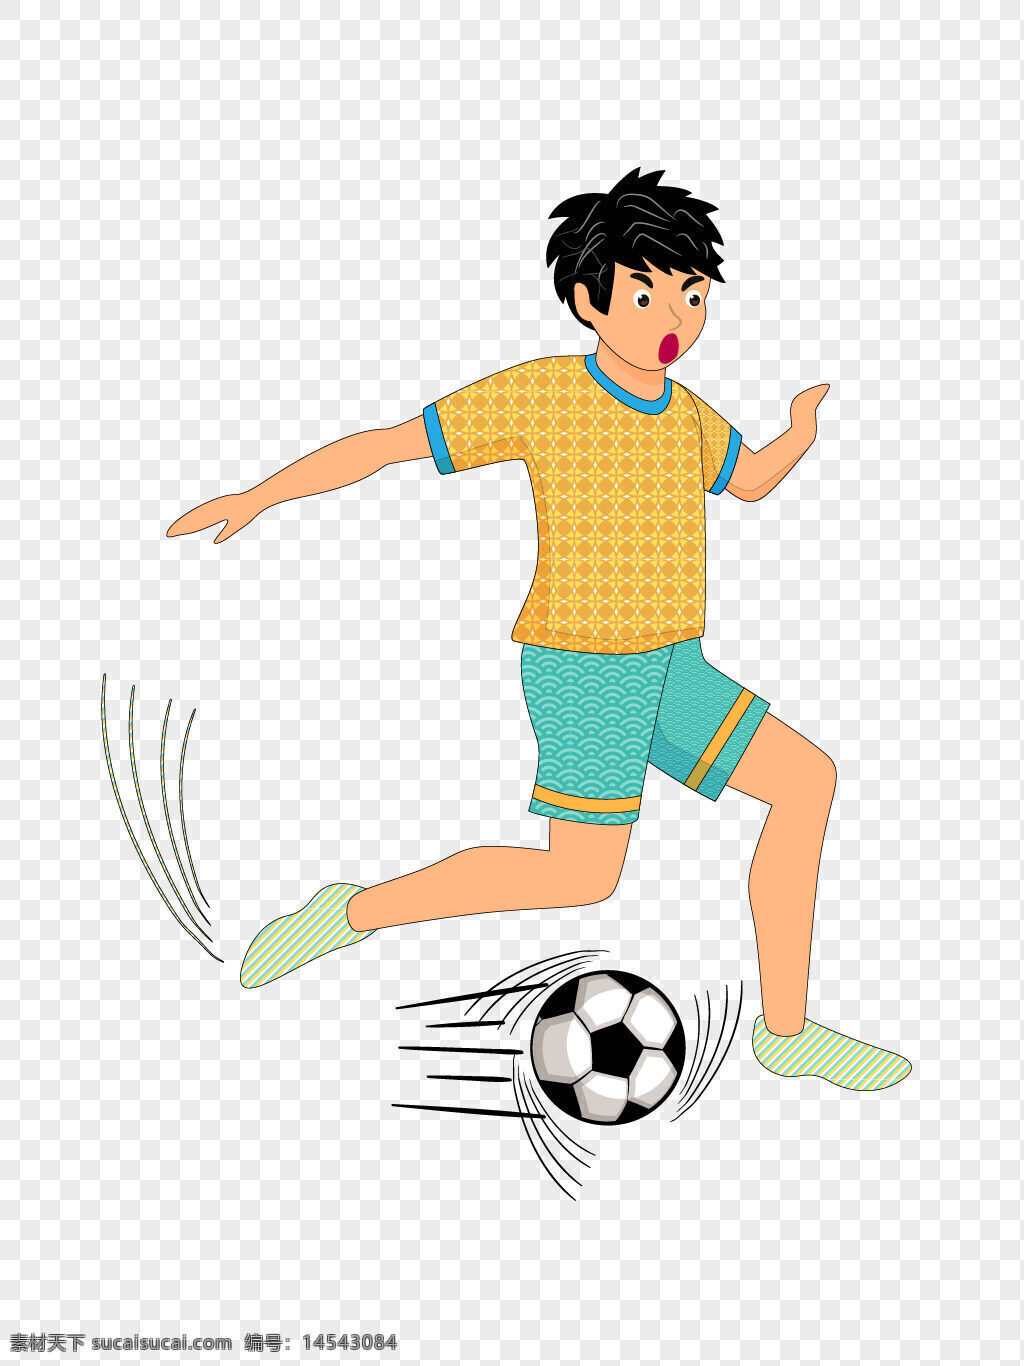 矢量图 踢足球 人物 设计 矢量图踢足球 人物设计 踢足球的人物设计 矢量图踢足球的人物设计